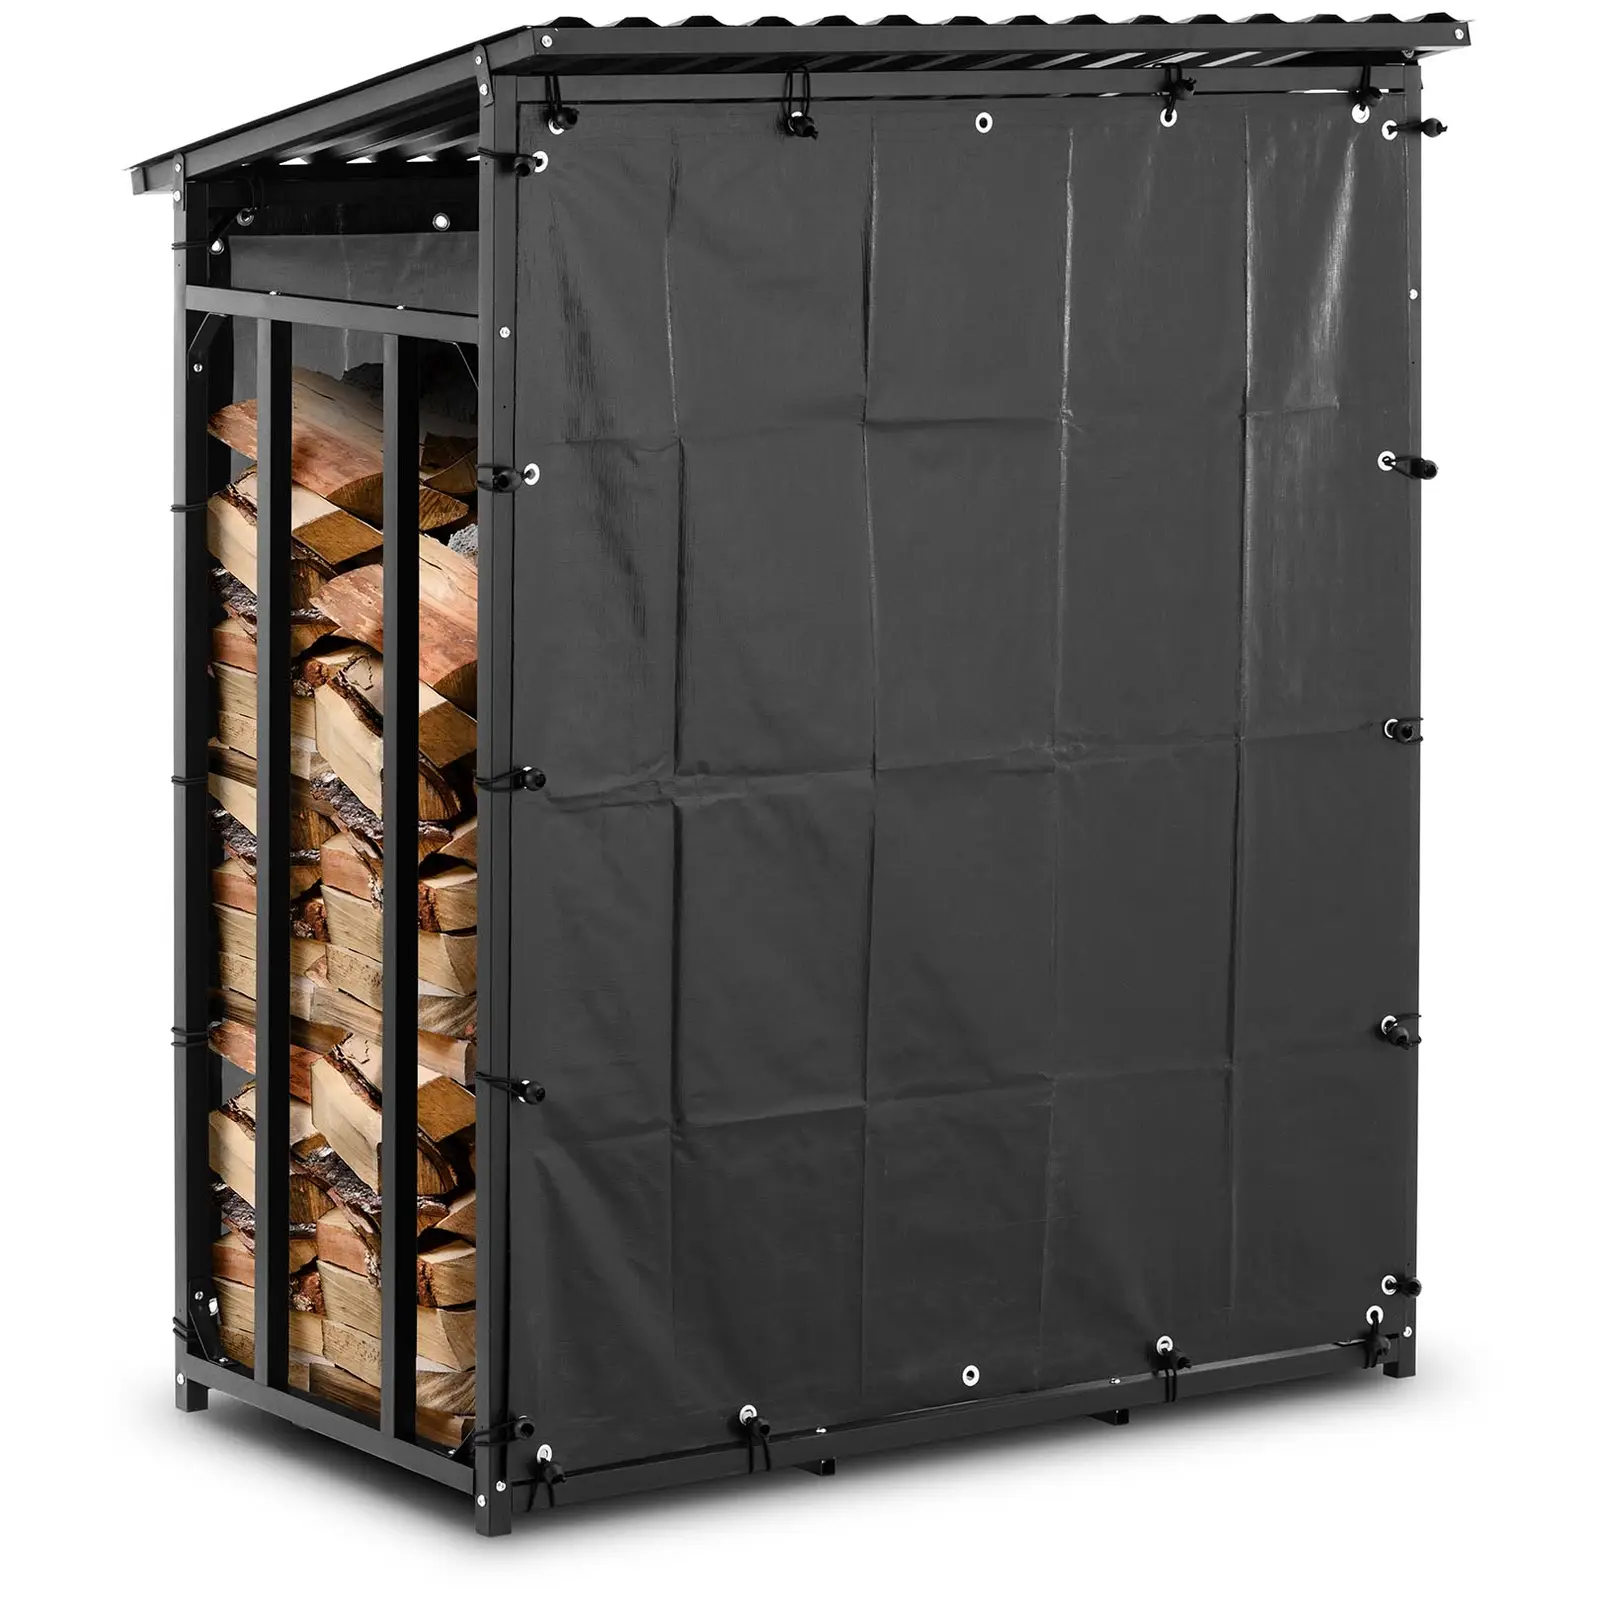 Brandhoutrek - met dekzeil en dak - 137 x 90 x 171 cm - zwart